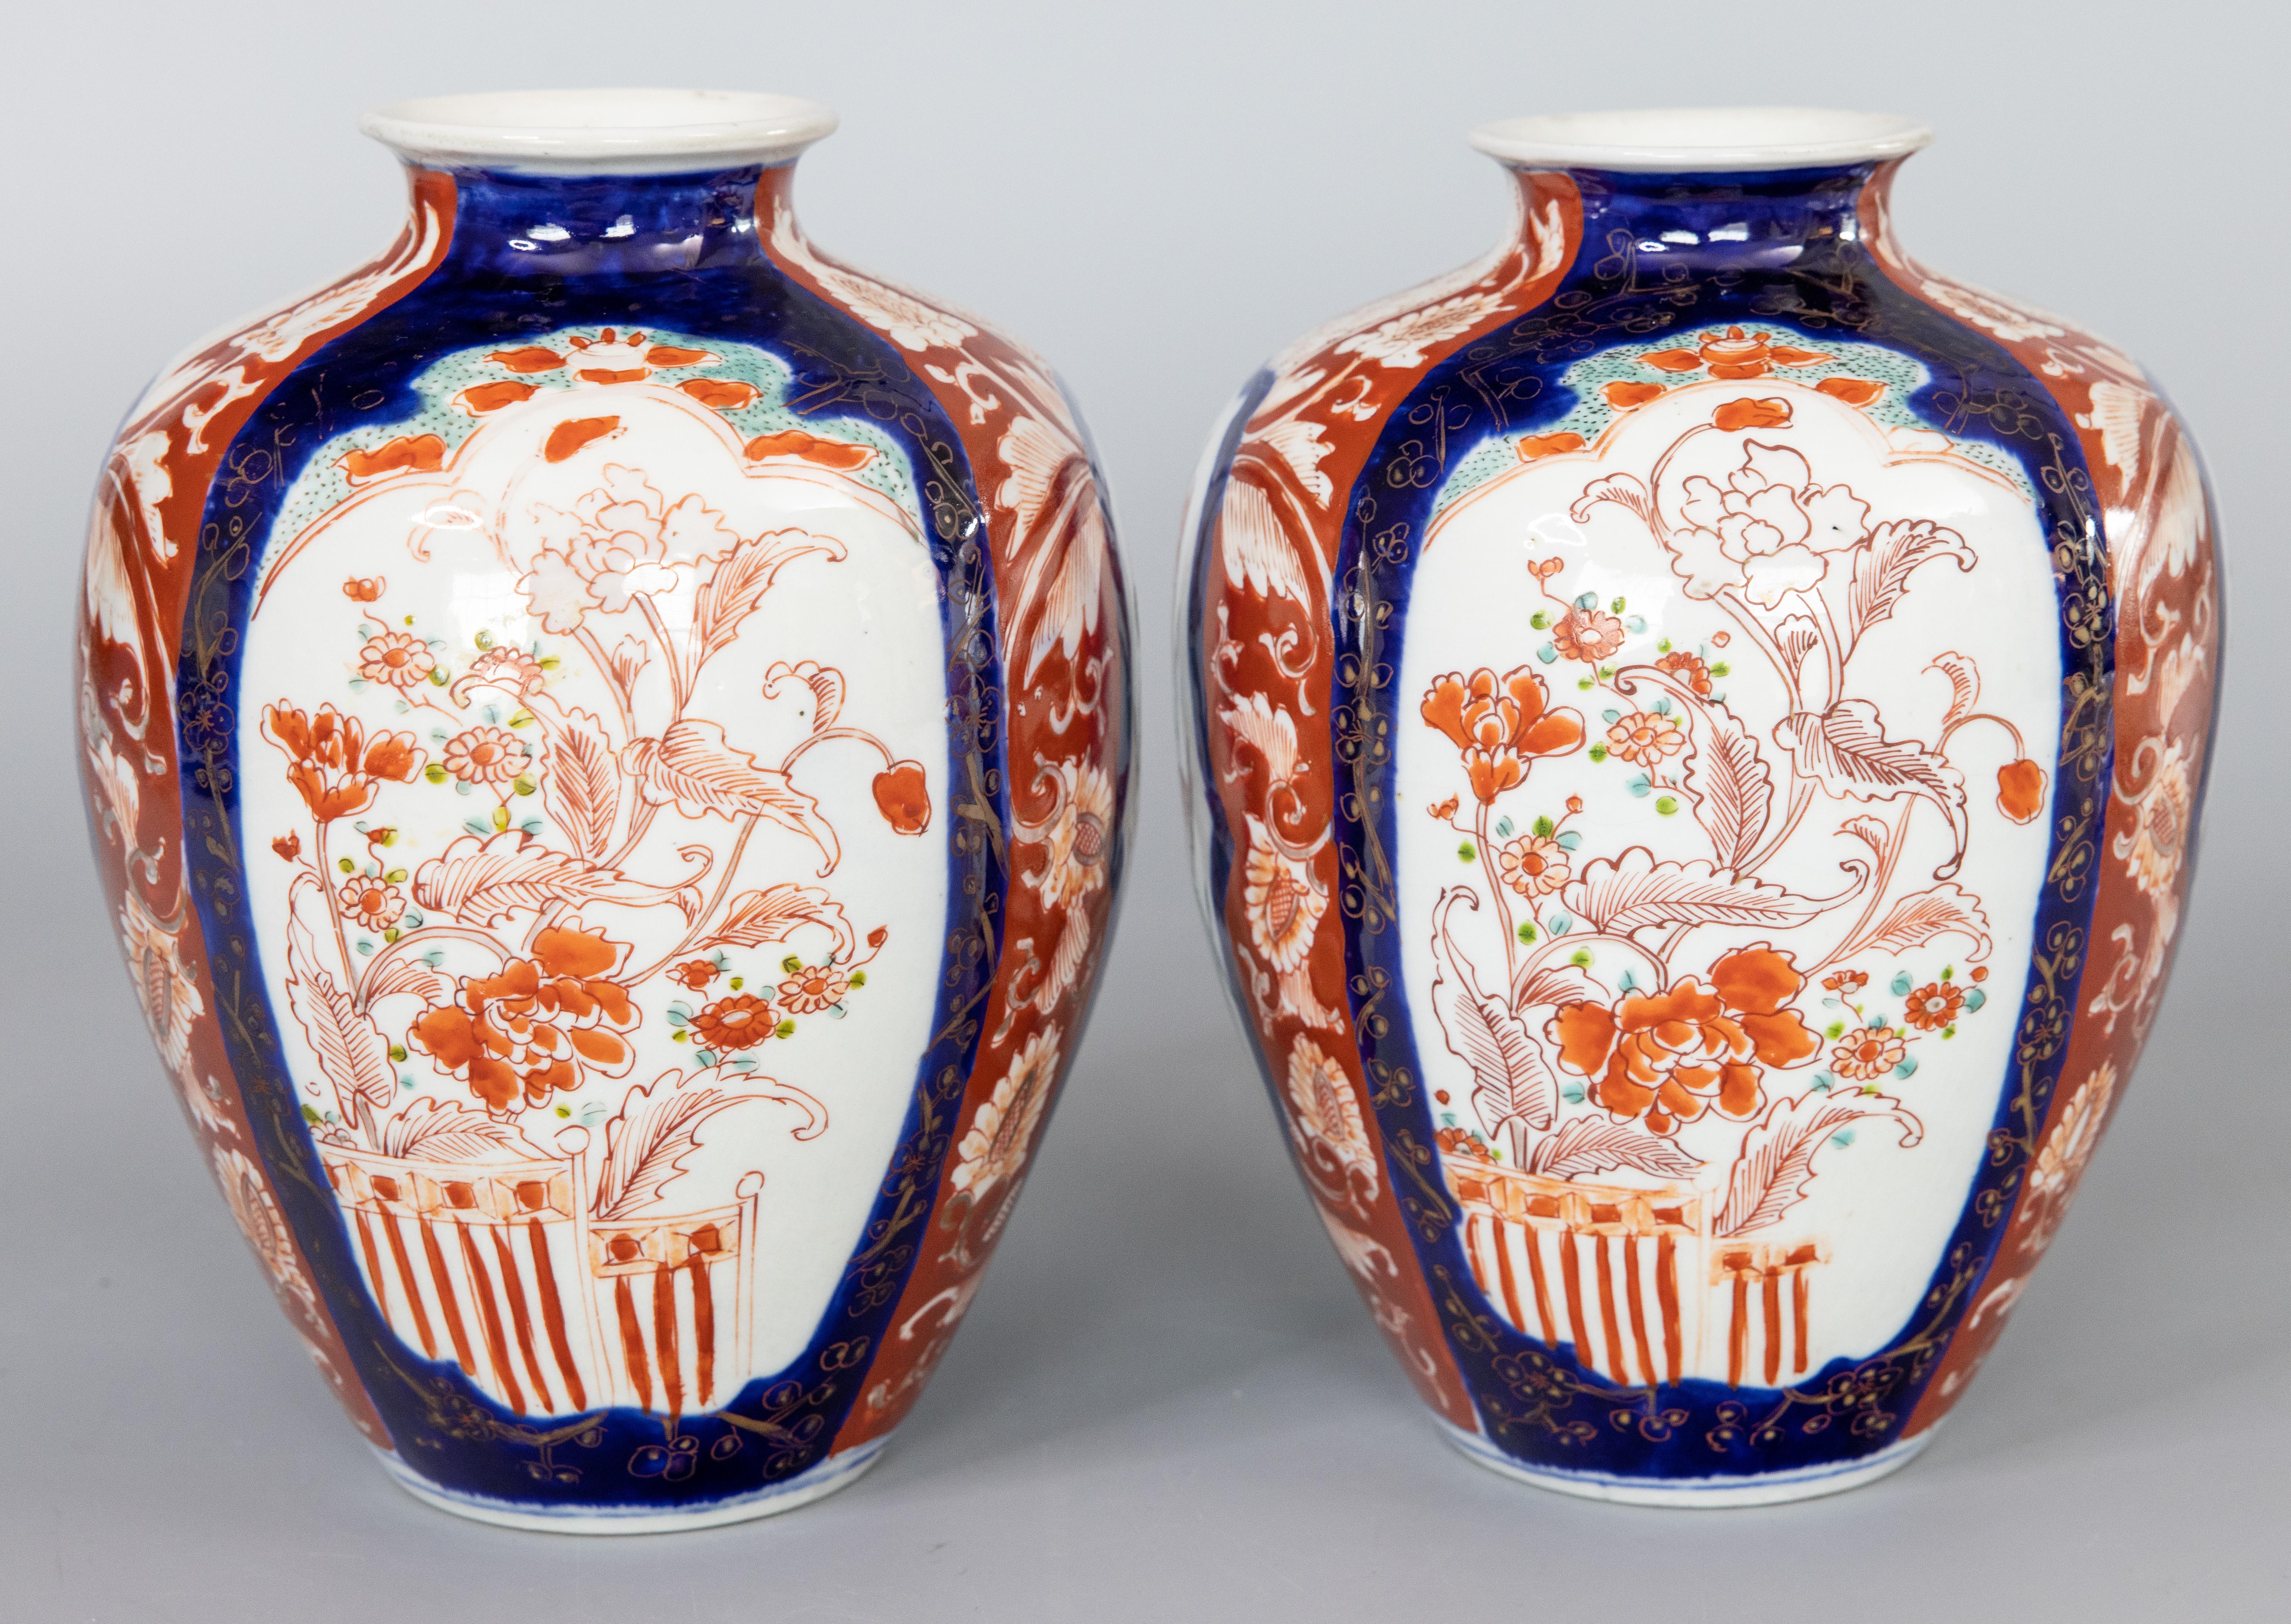 Une magnifique paire de vases en porcelaine japonaise Imari du XIXe siècle. Ces vases de qualité ont une forme charmante et un motif floral peint à la main dans les couleurs traditionnelles d'Imari. Ils sont dans un état antique magnifique et